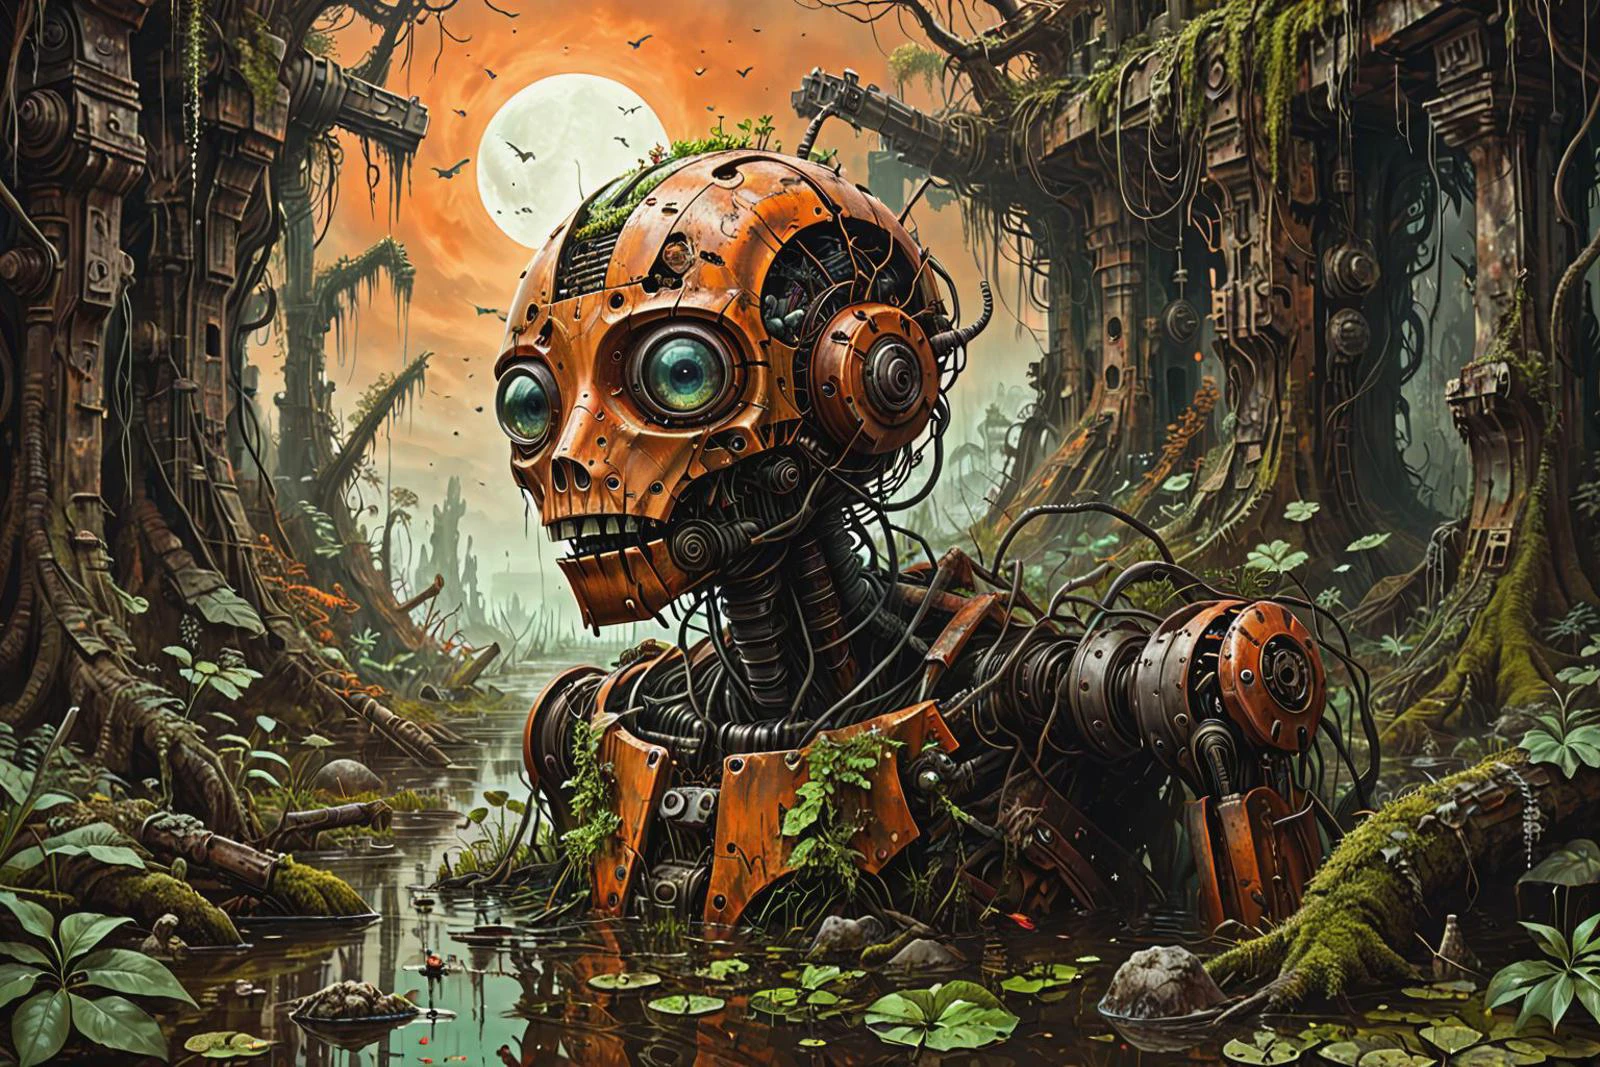 沼に沈んだ、壊れて錆びて生い茂った戦闘ロボットの幻想的でシュールな鮮明なSFイラスト, 破壊された武器, 機械, モス, 葉, 木, 密林, 暗いオレンジ色の空,
 左の錯覚